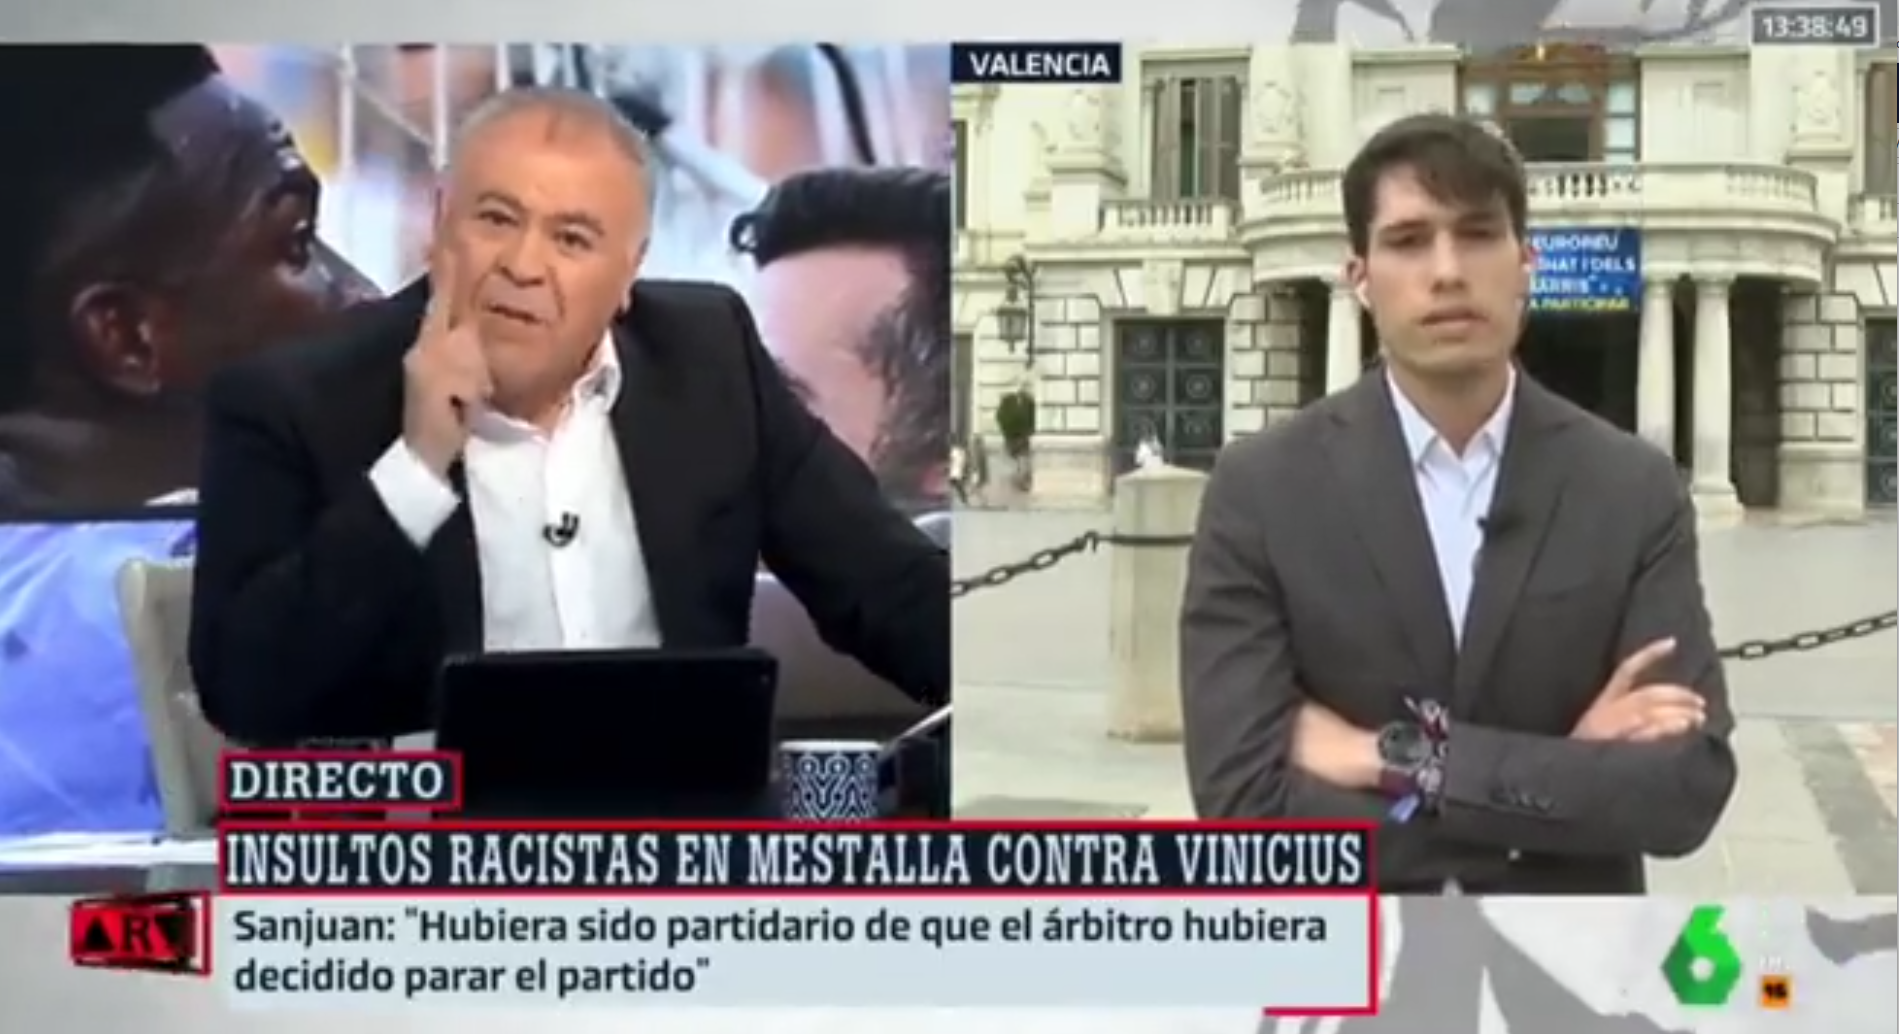 Enfrentamiento de Ferreras con el portavoz del PSOE en Valencia por los insultos a Vinicius